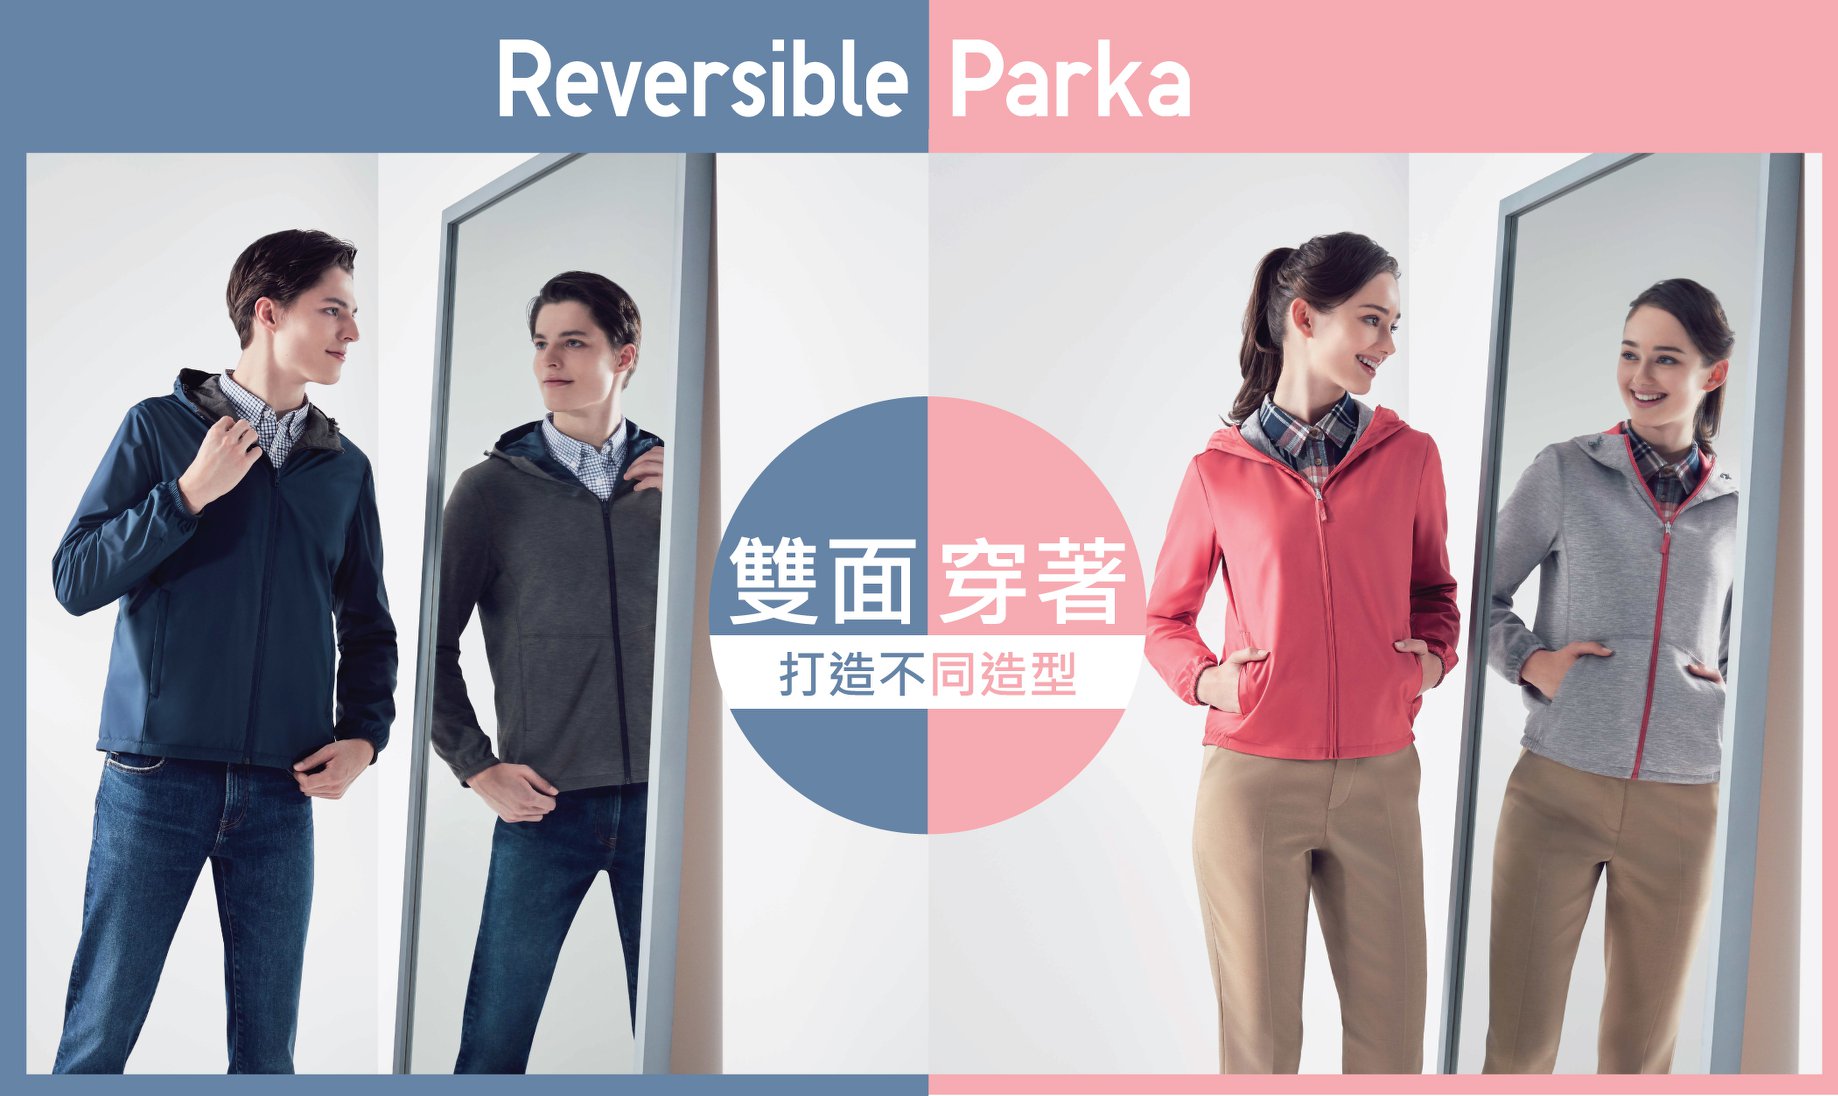 【#ReversibleParka: 雙面穿著🔁 不同造型無難度!】